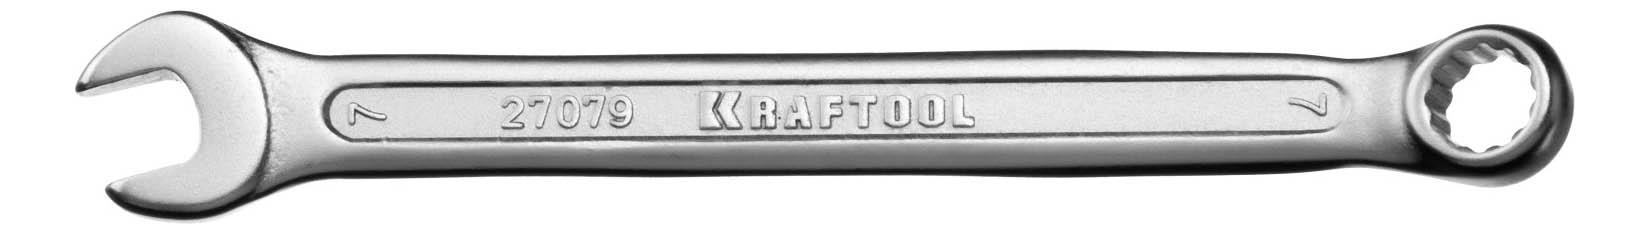 Комбинированный ключ  KRAFTOOL 27079-07